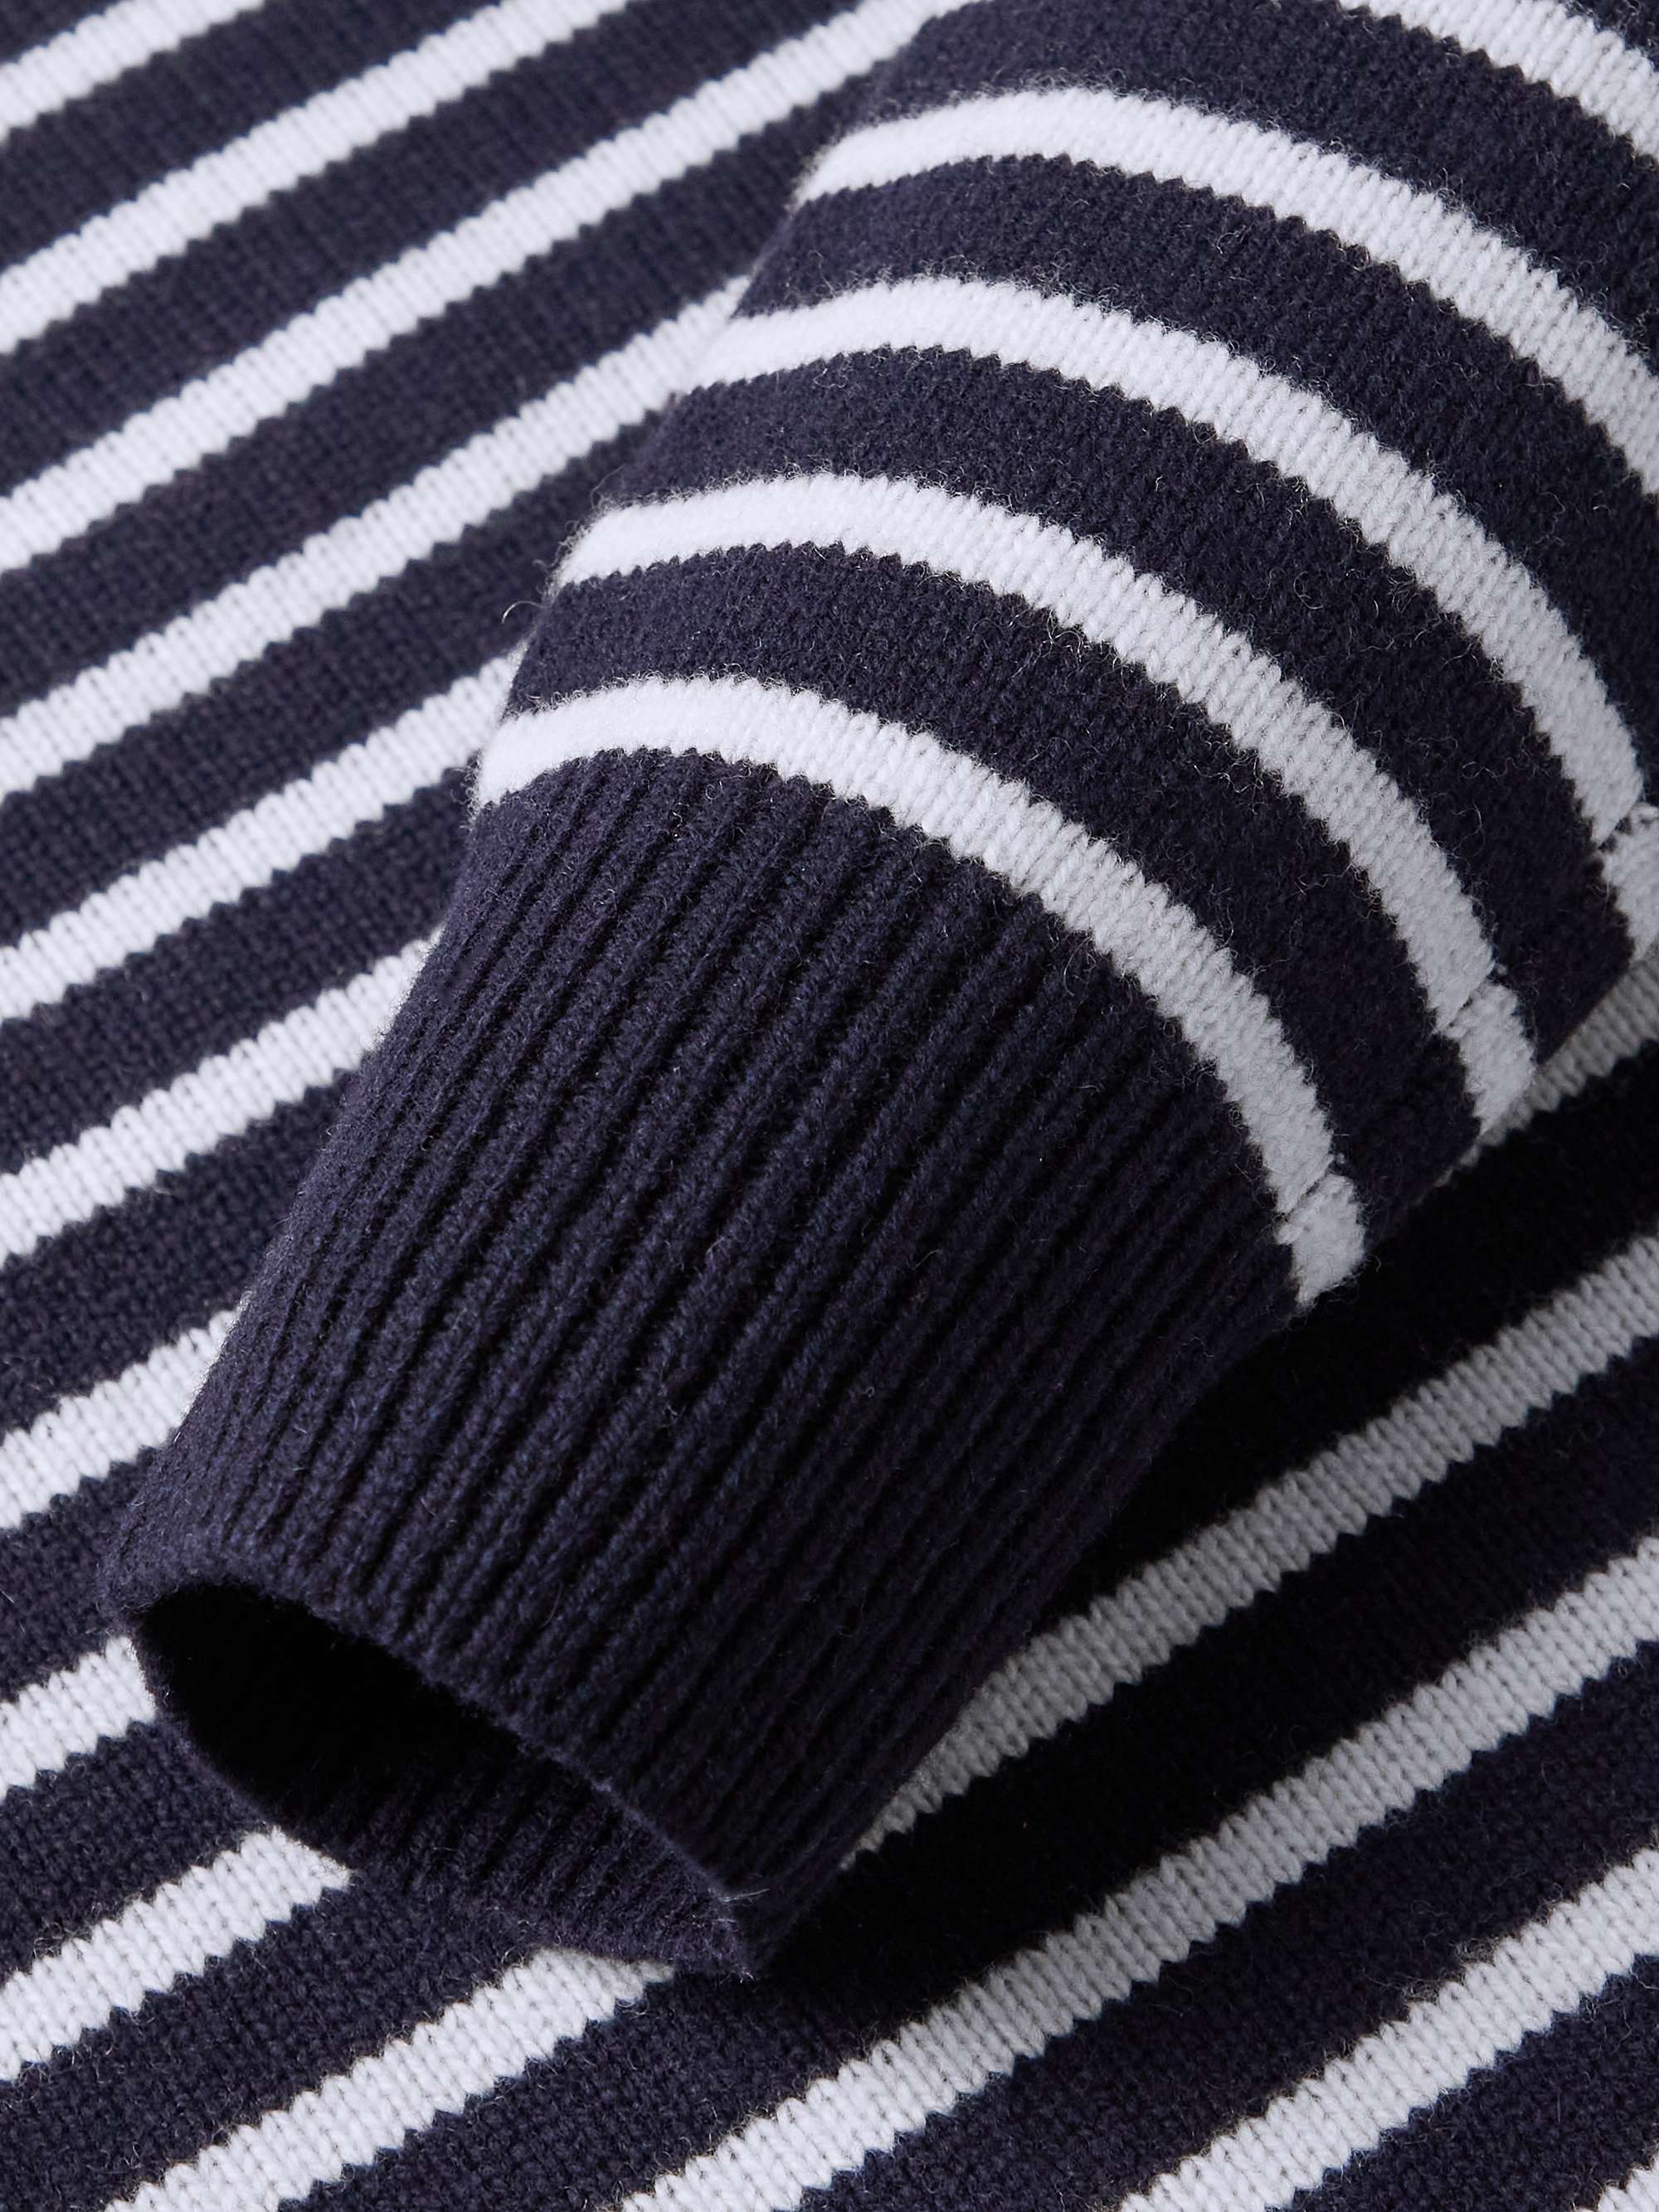 ALEX MILL Striped Merino Wool Sweater